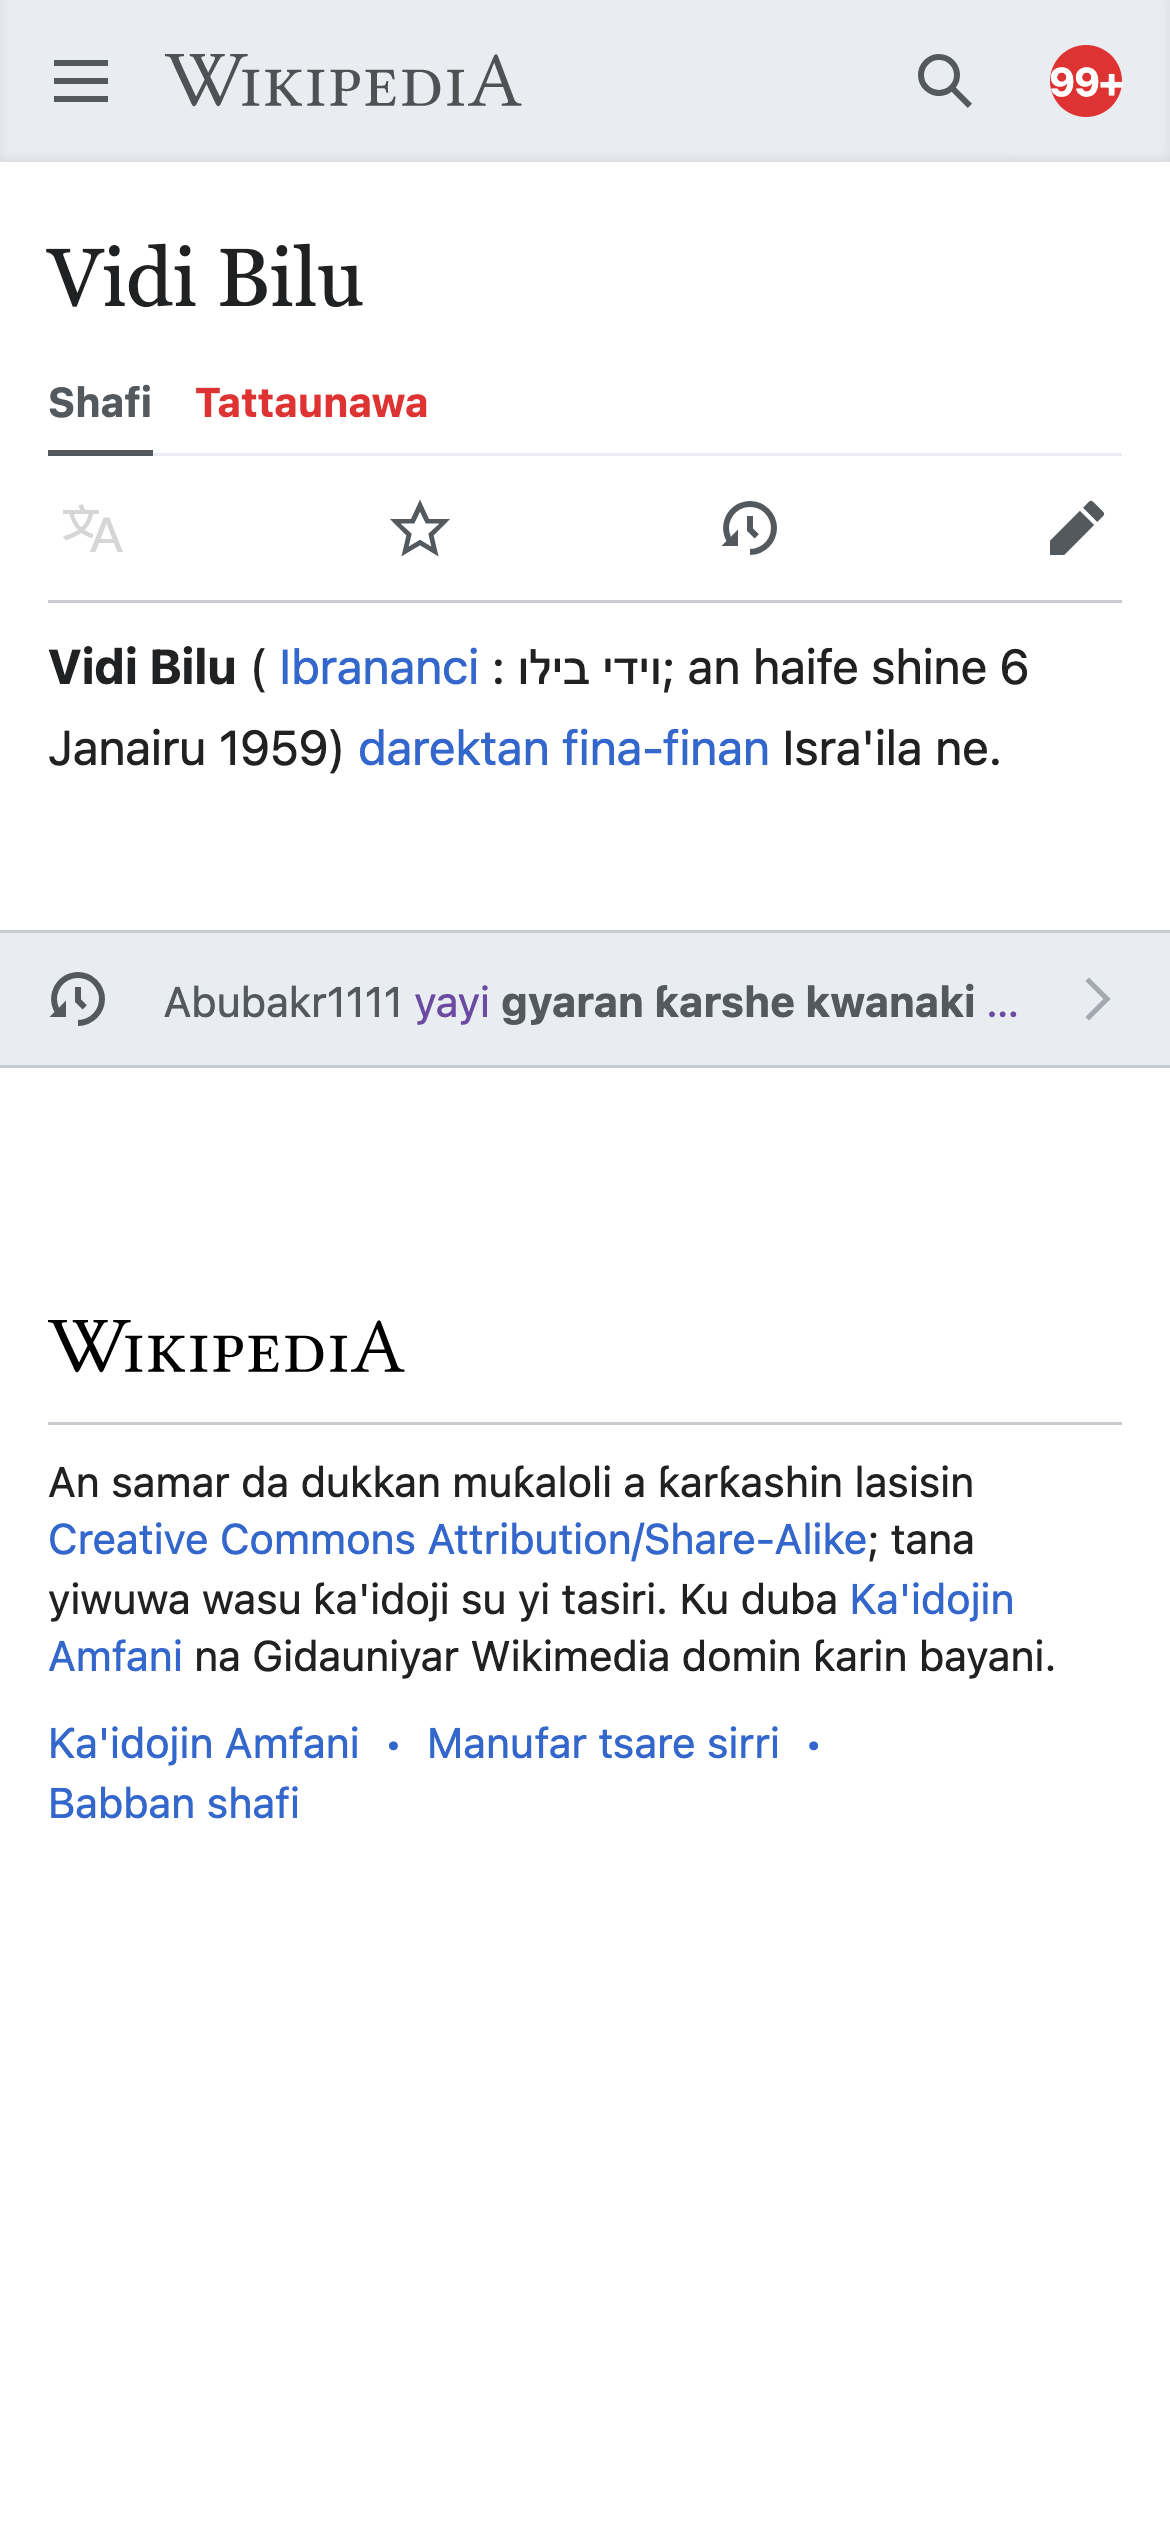 ha.m.wikipedia.org_wiki_Vidi_Bilu(iPhone 12 Pro).png (2×1 px, 233 KB)